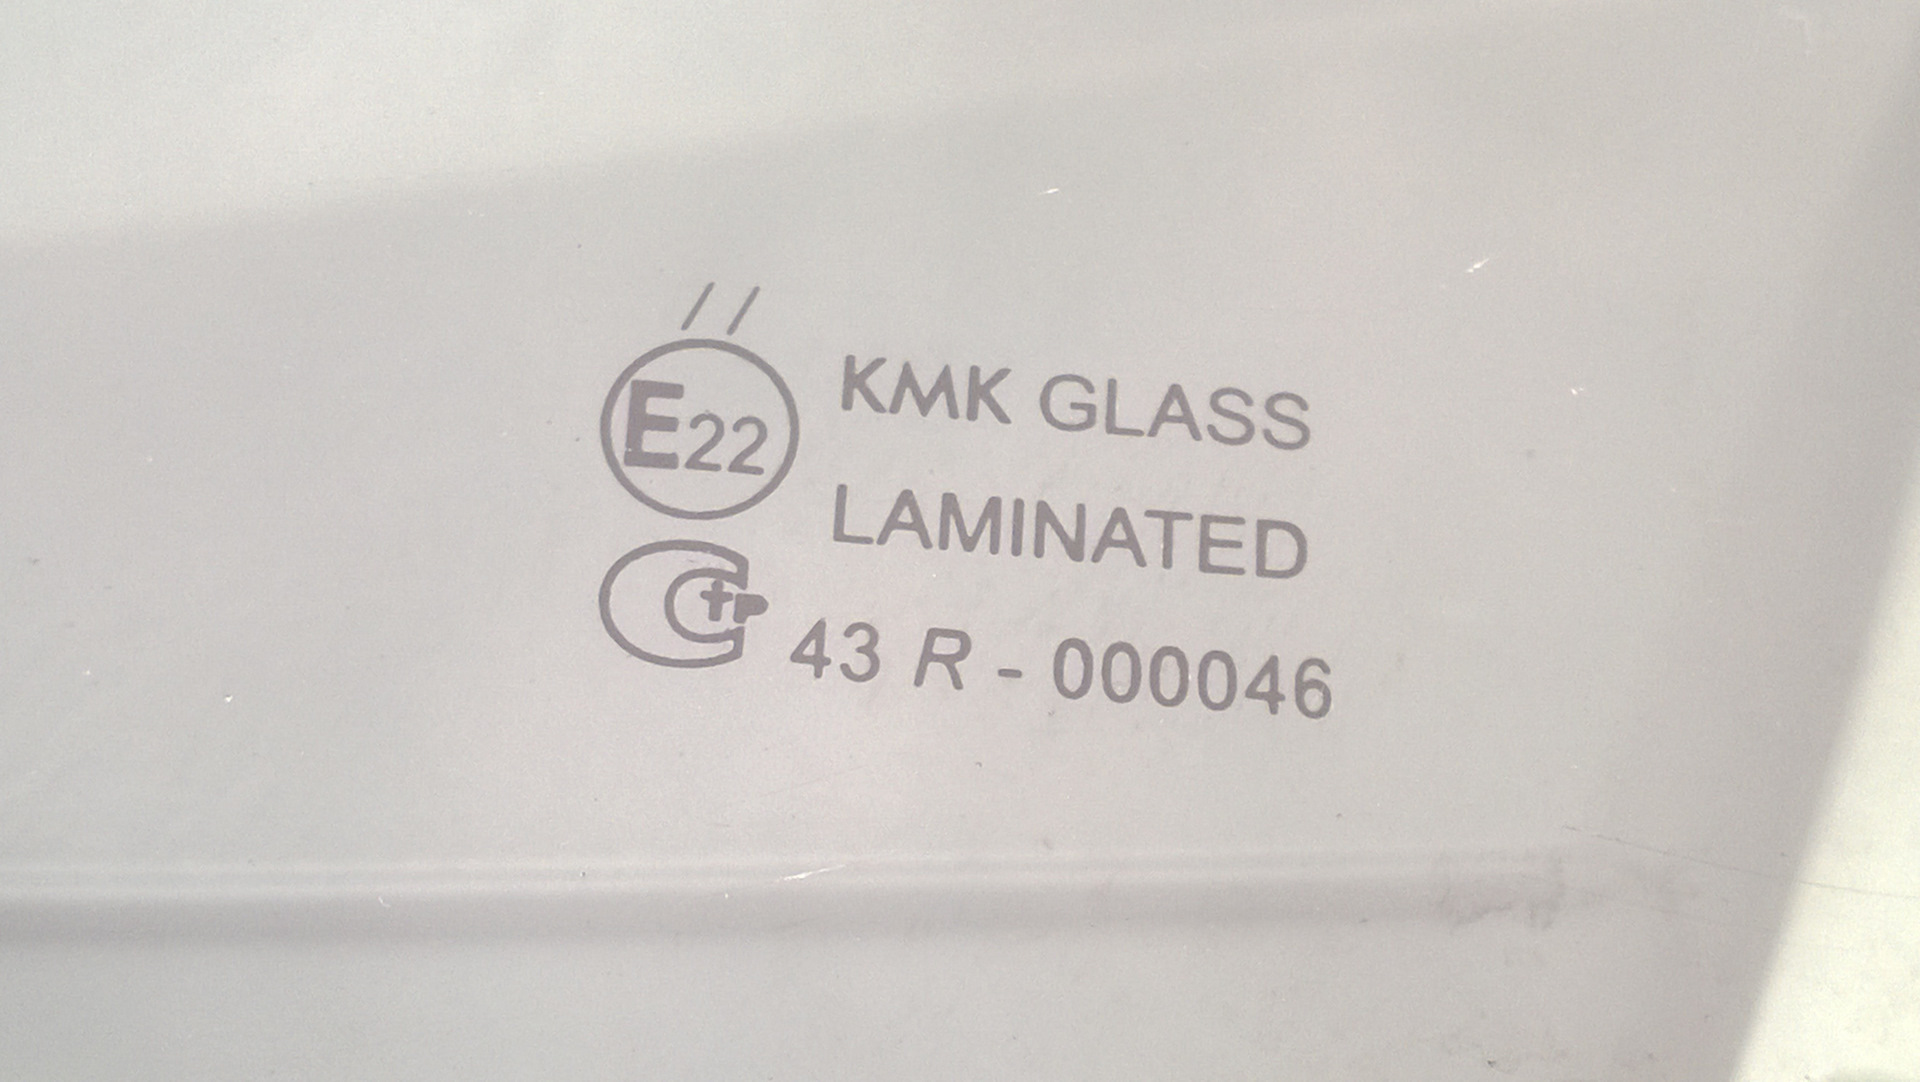 Лобовое стекло кмк отзывы. КМК стекла. Расшифровка стекол KMK. KMK стекла расшифровка. Расшифровка стекол KMK Glass.